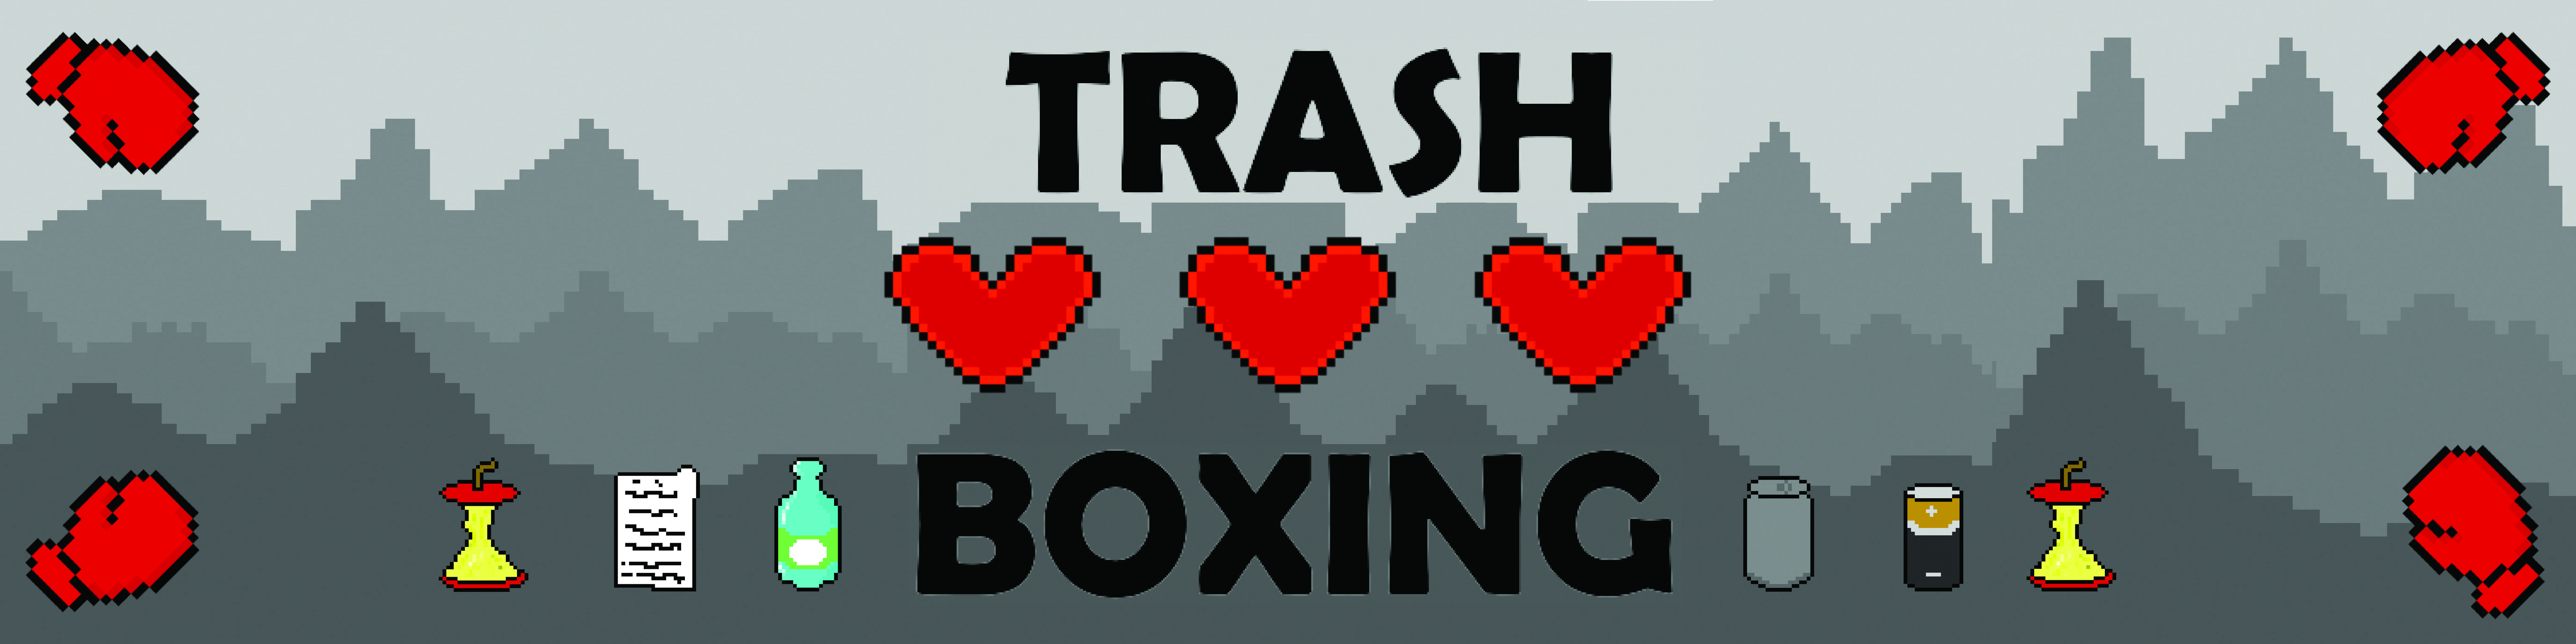 Trash Boxing Online